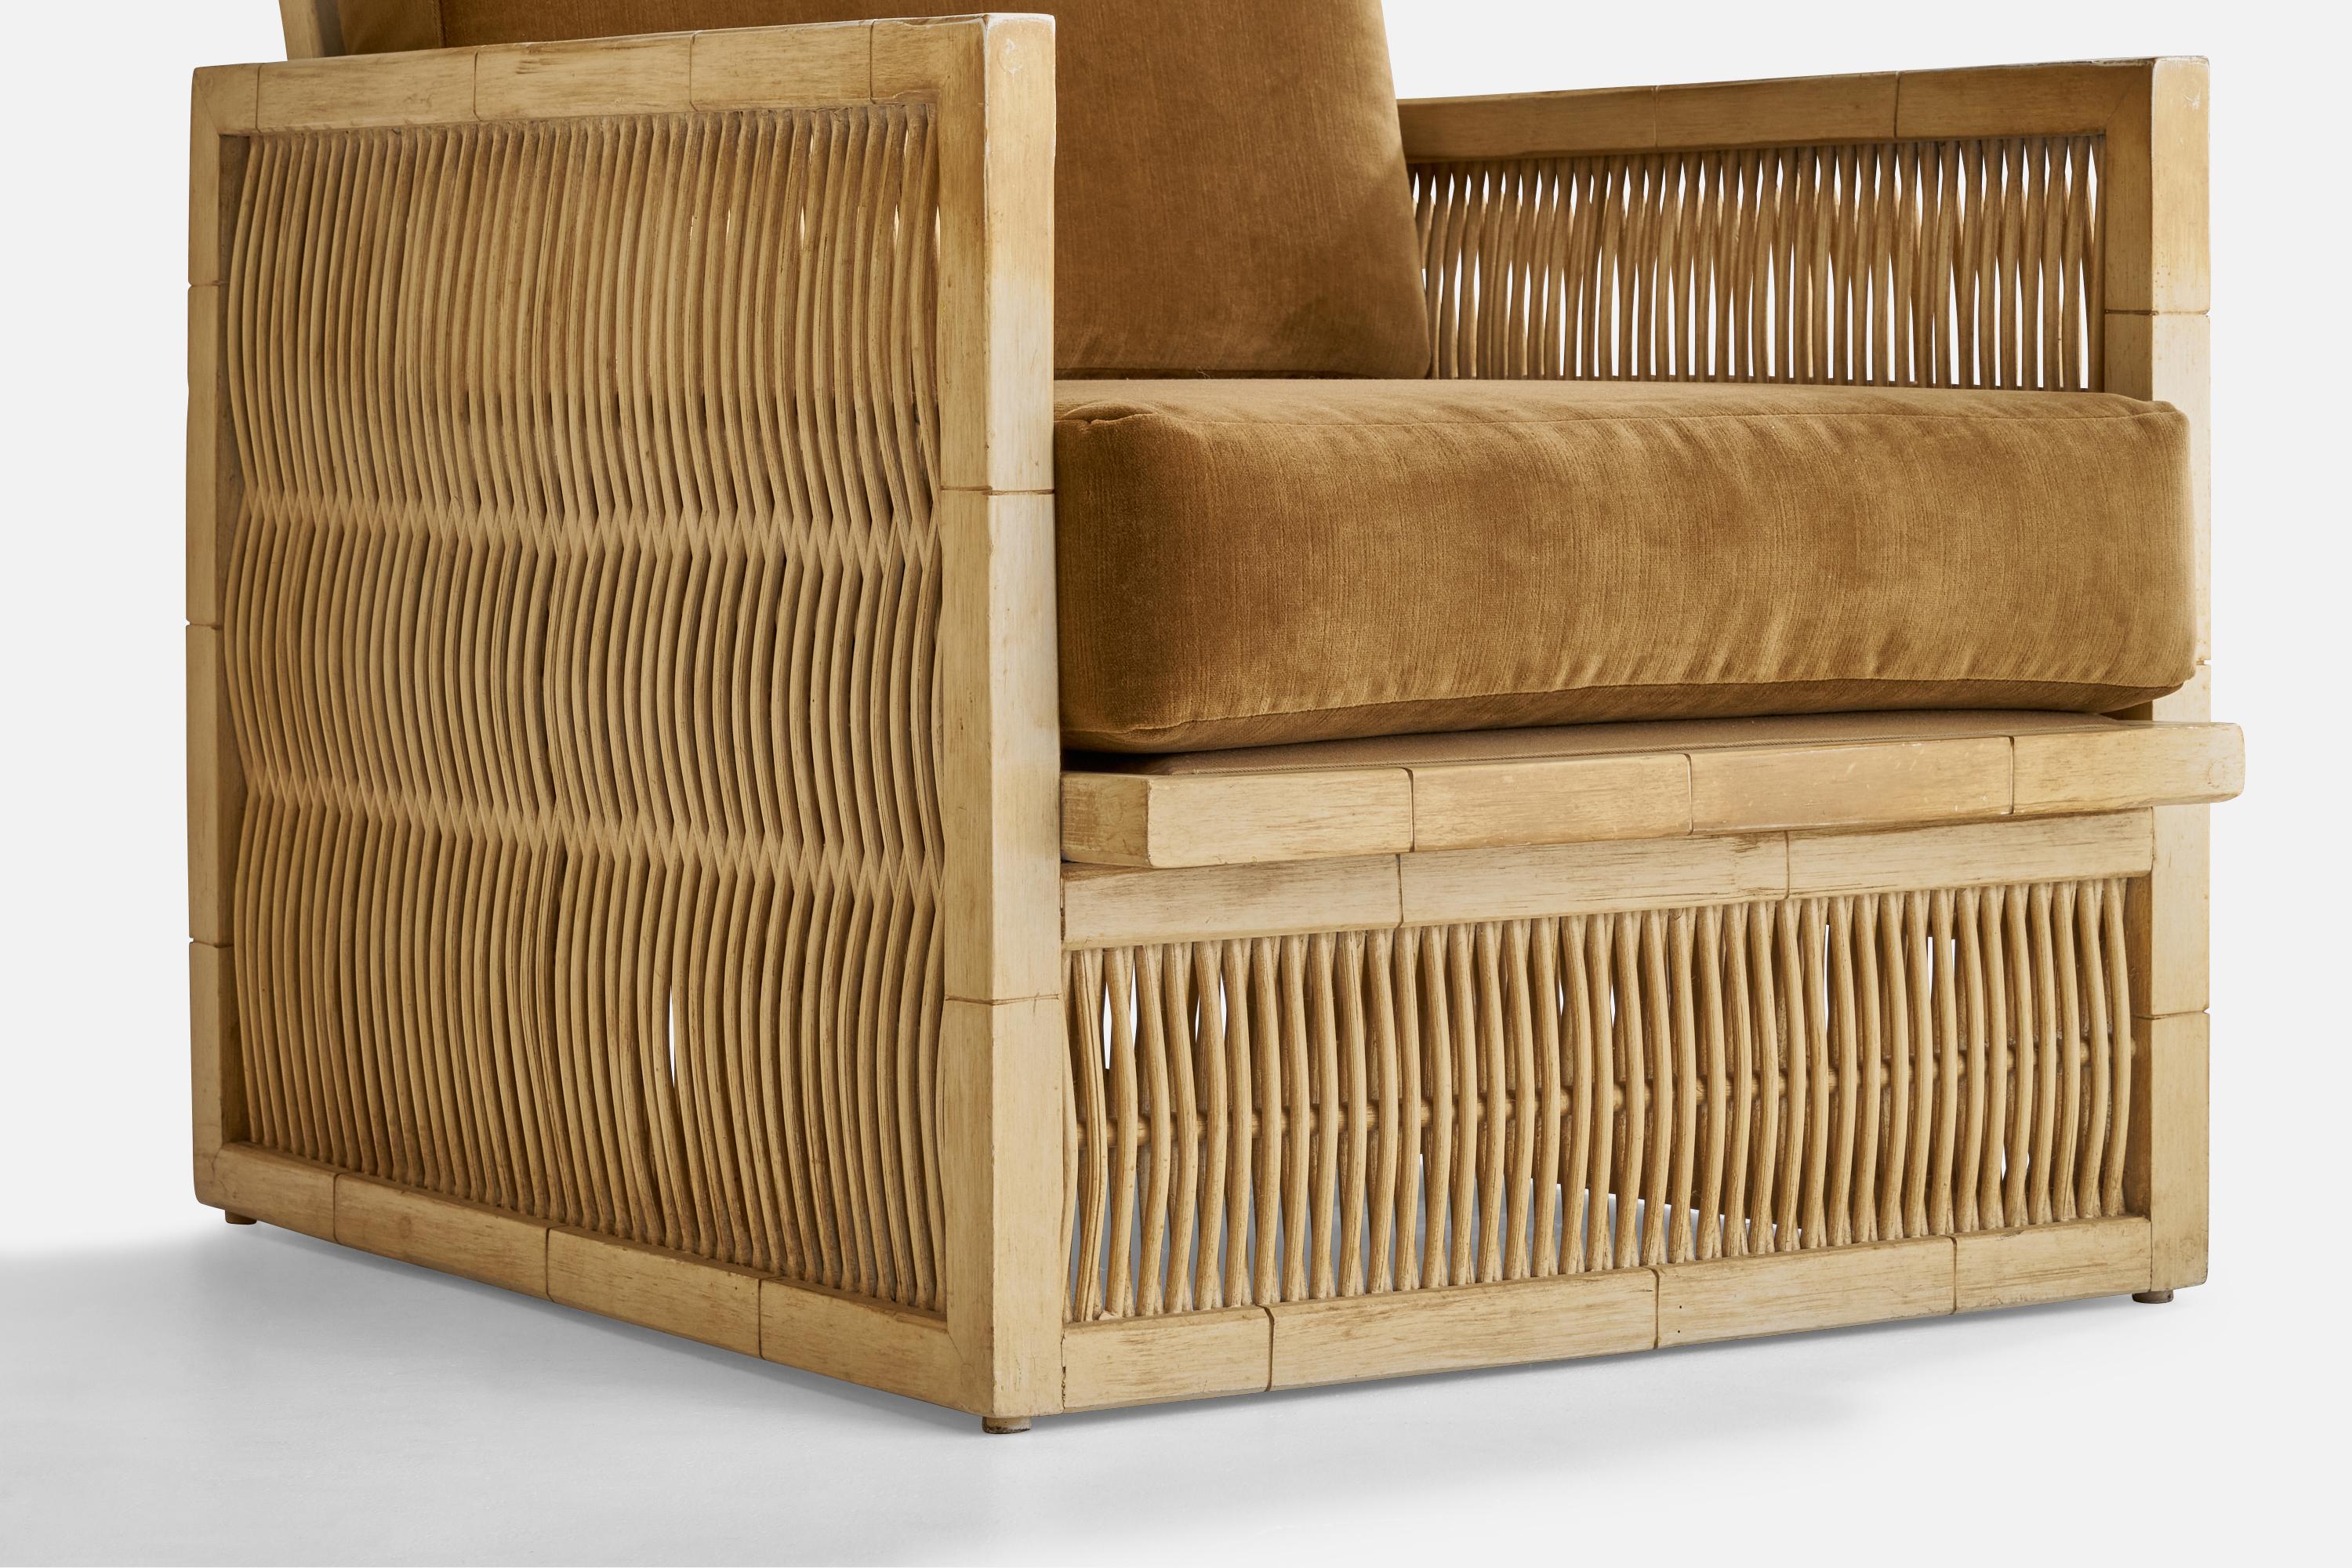 American Designer, Lounge Chairs, Oak, Bamboo, Velvet, USA, 1960s For Sale 2